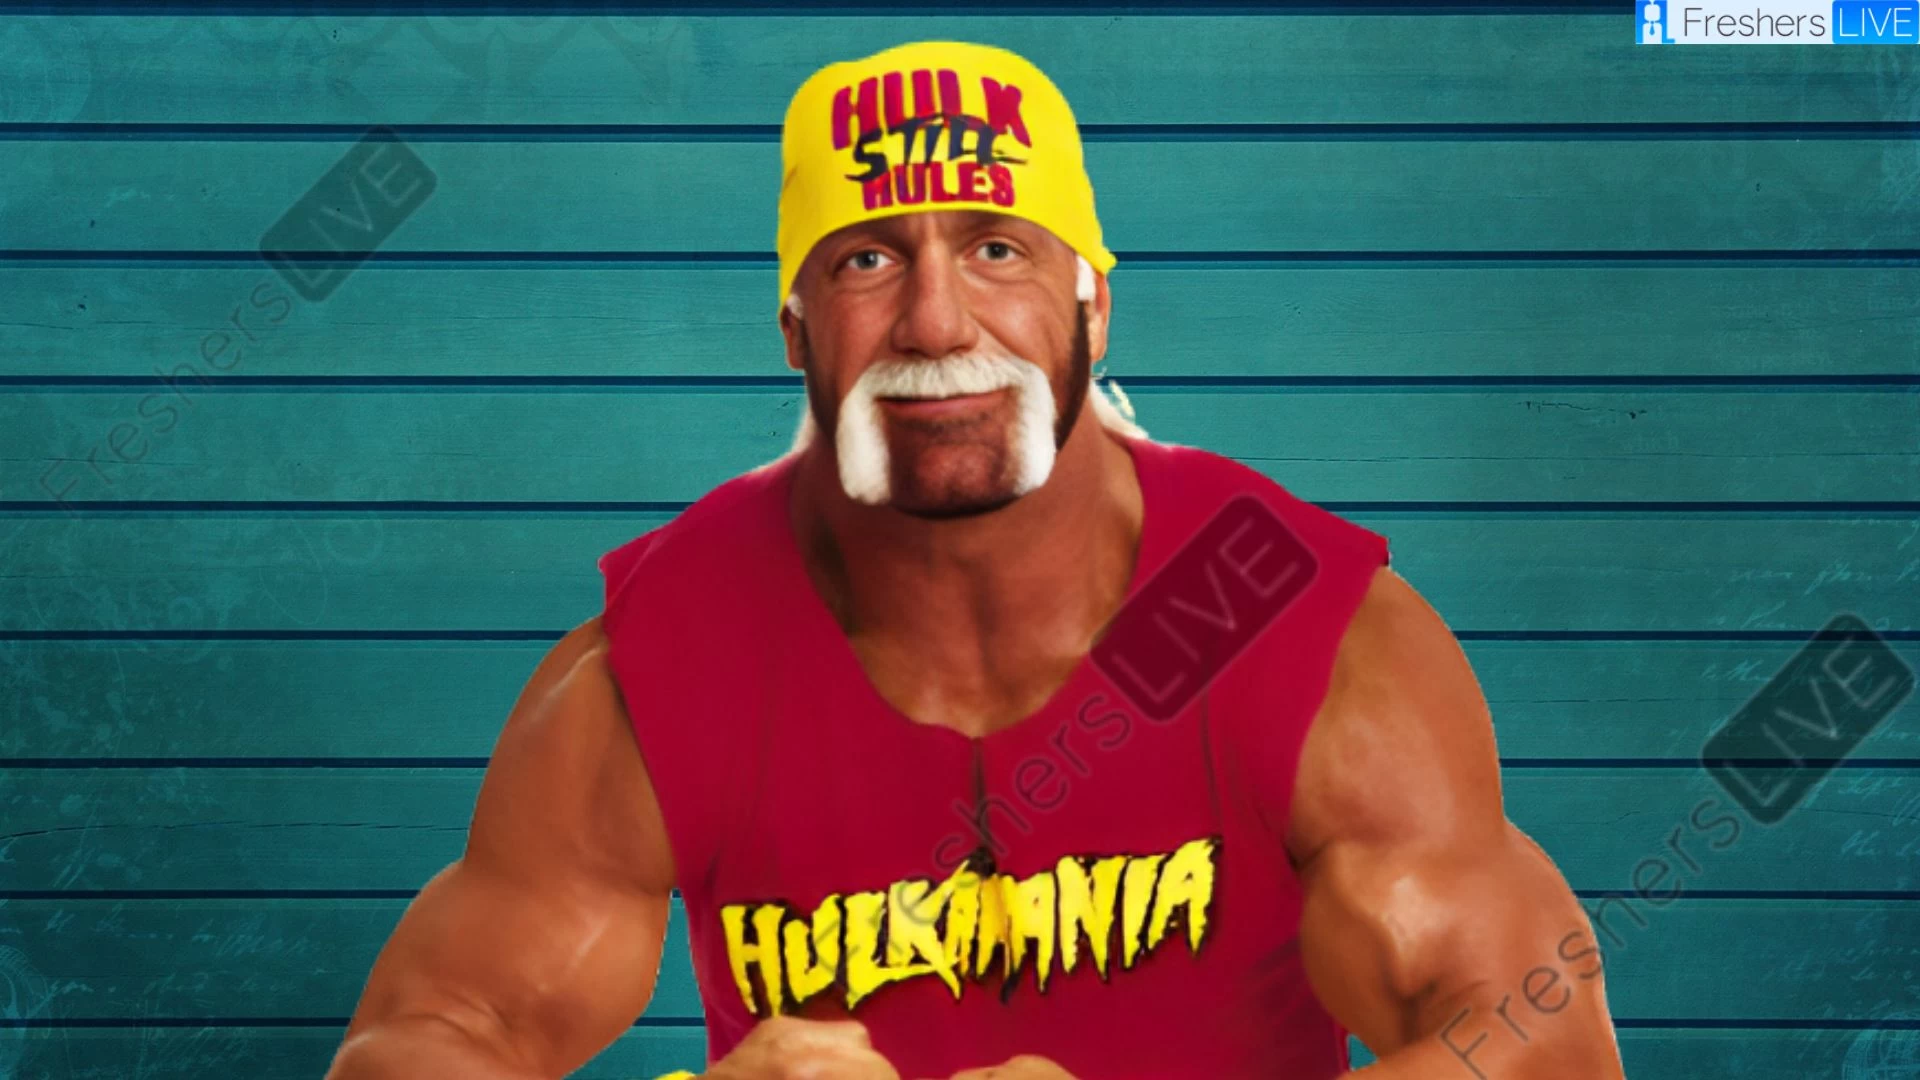 Etnia de Hulk Hogan, ¿Cuál es la etnia de Hulk Hogan?